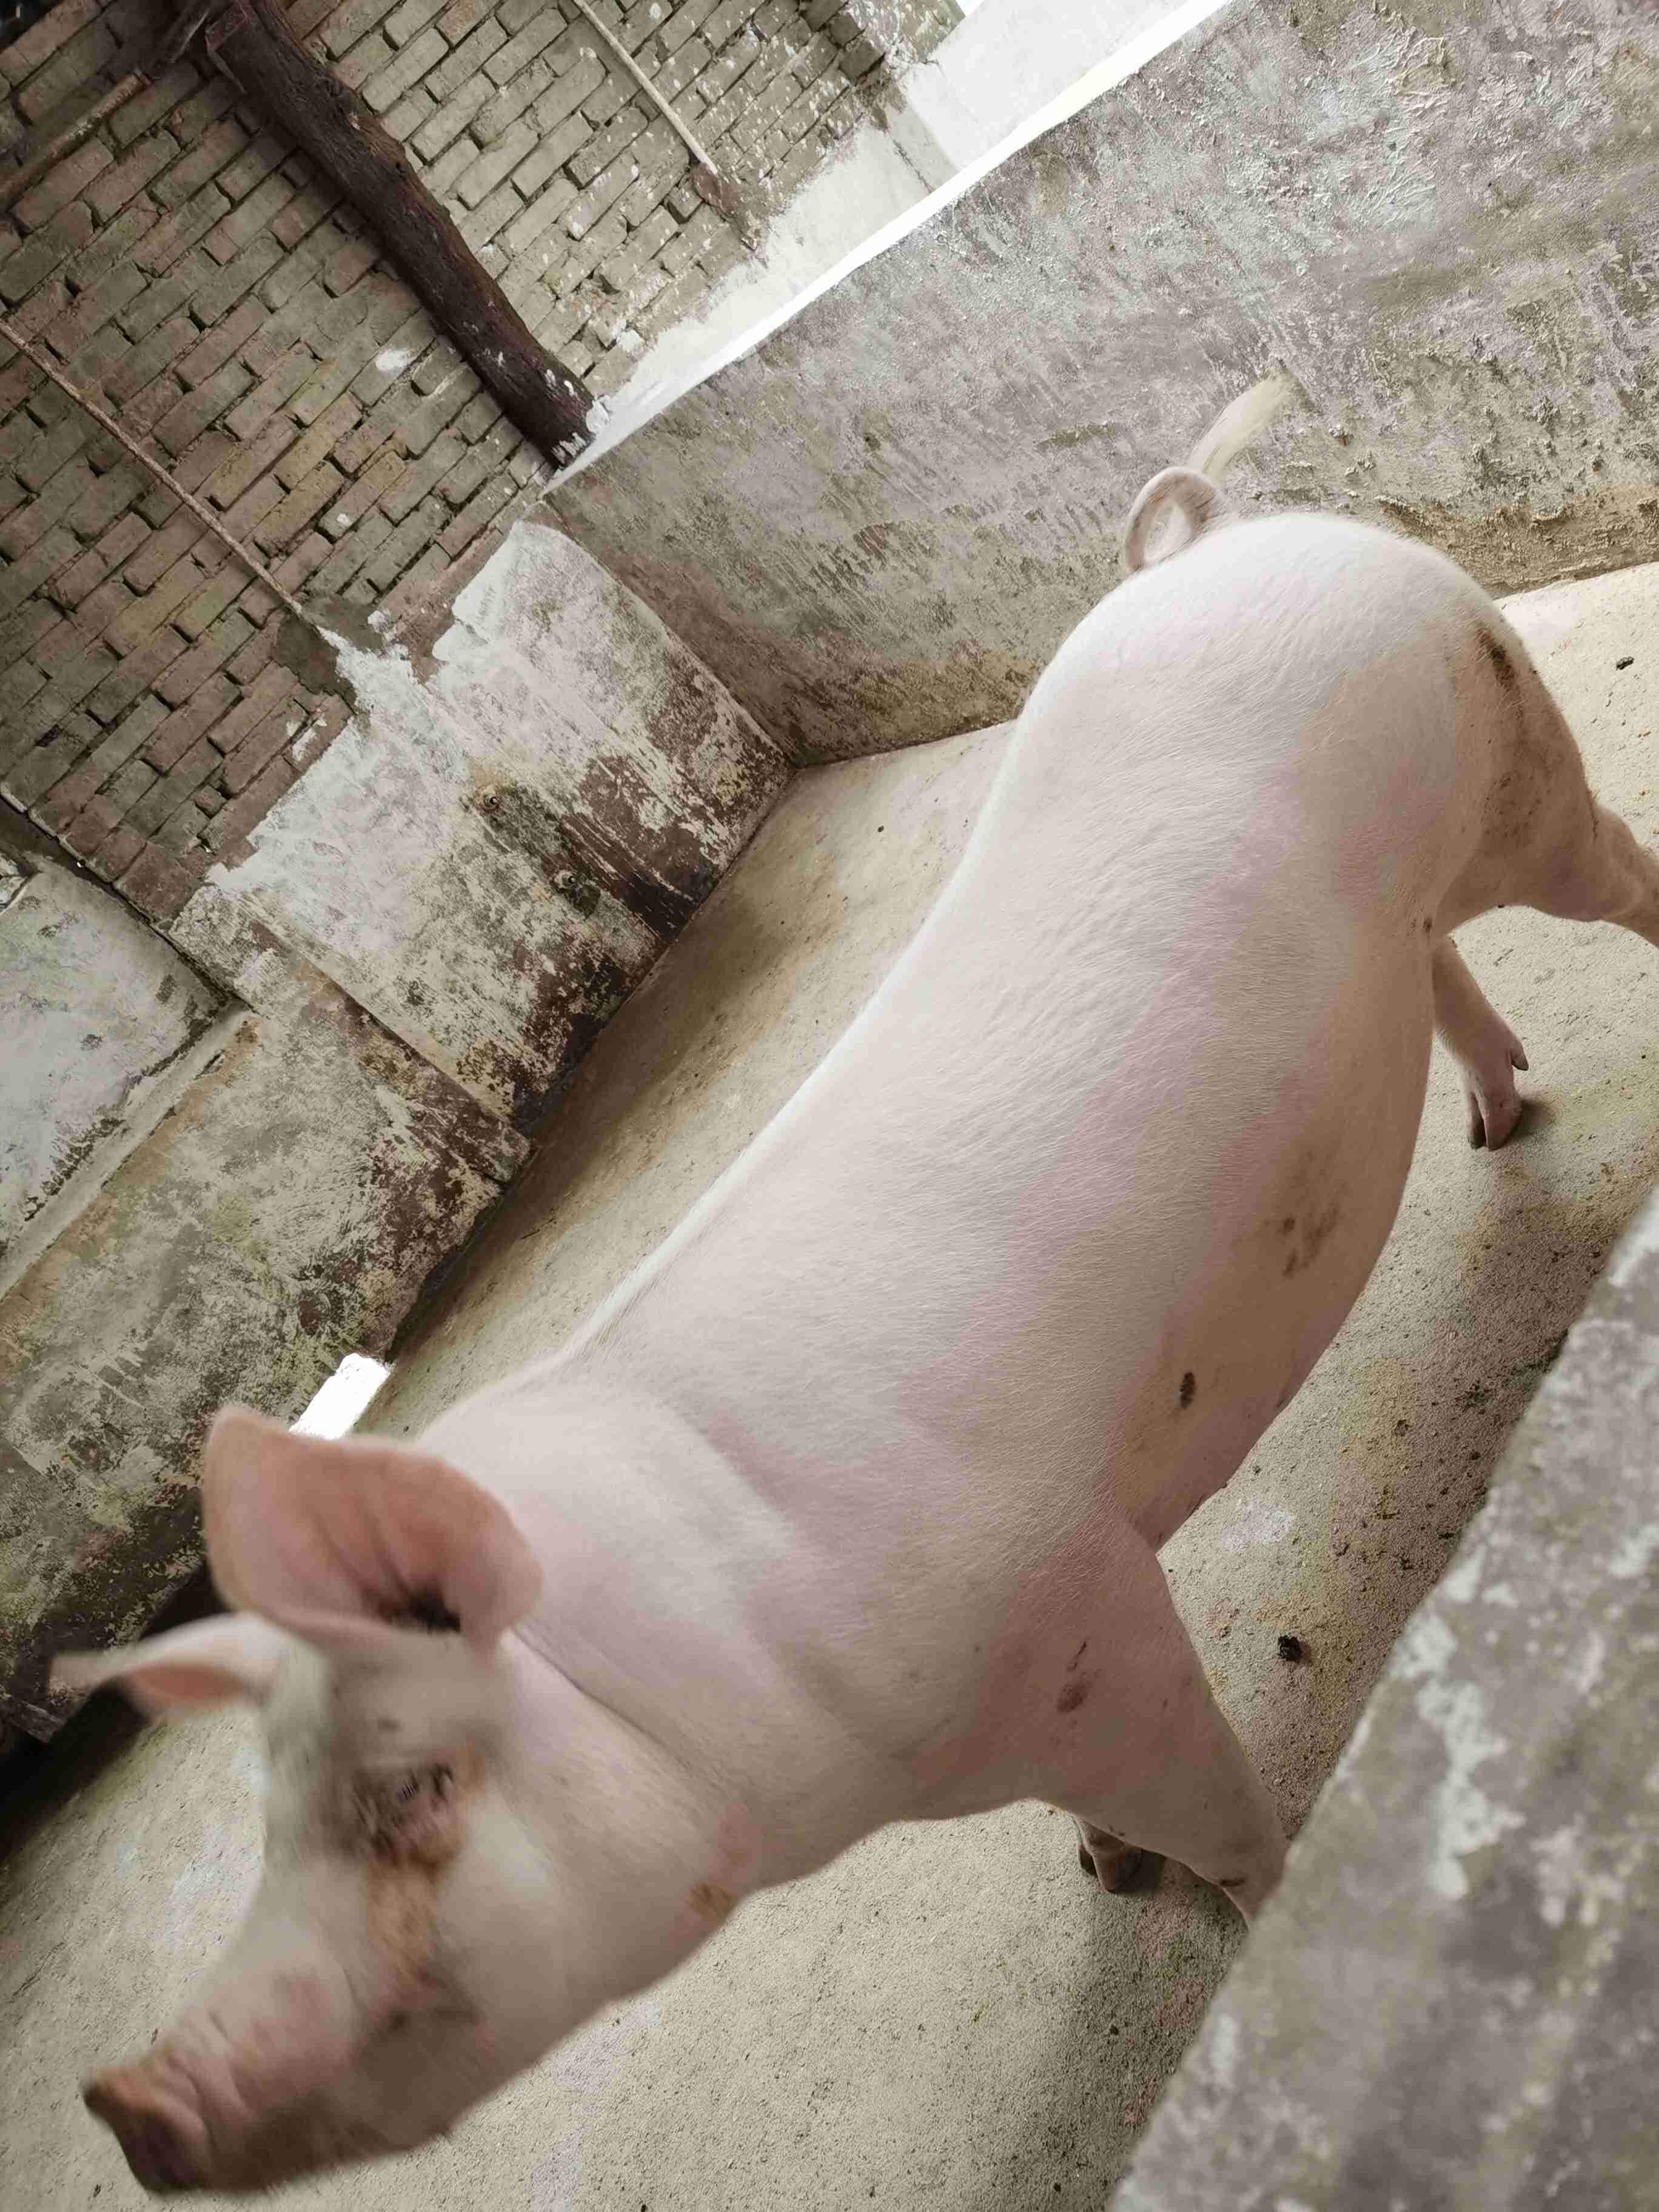 母猪怀孕90天图片图片